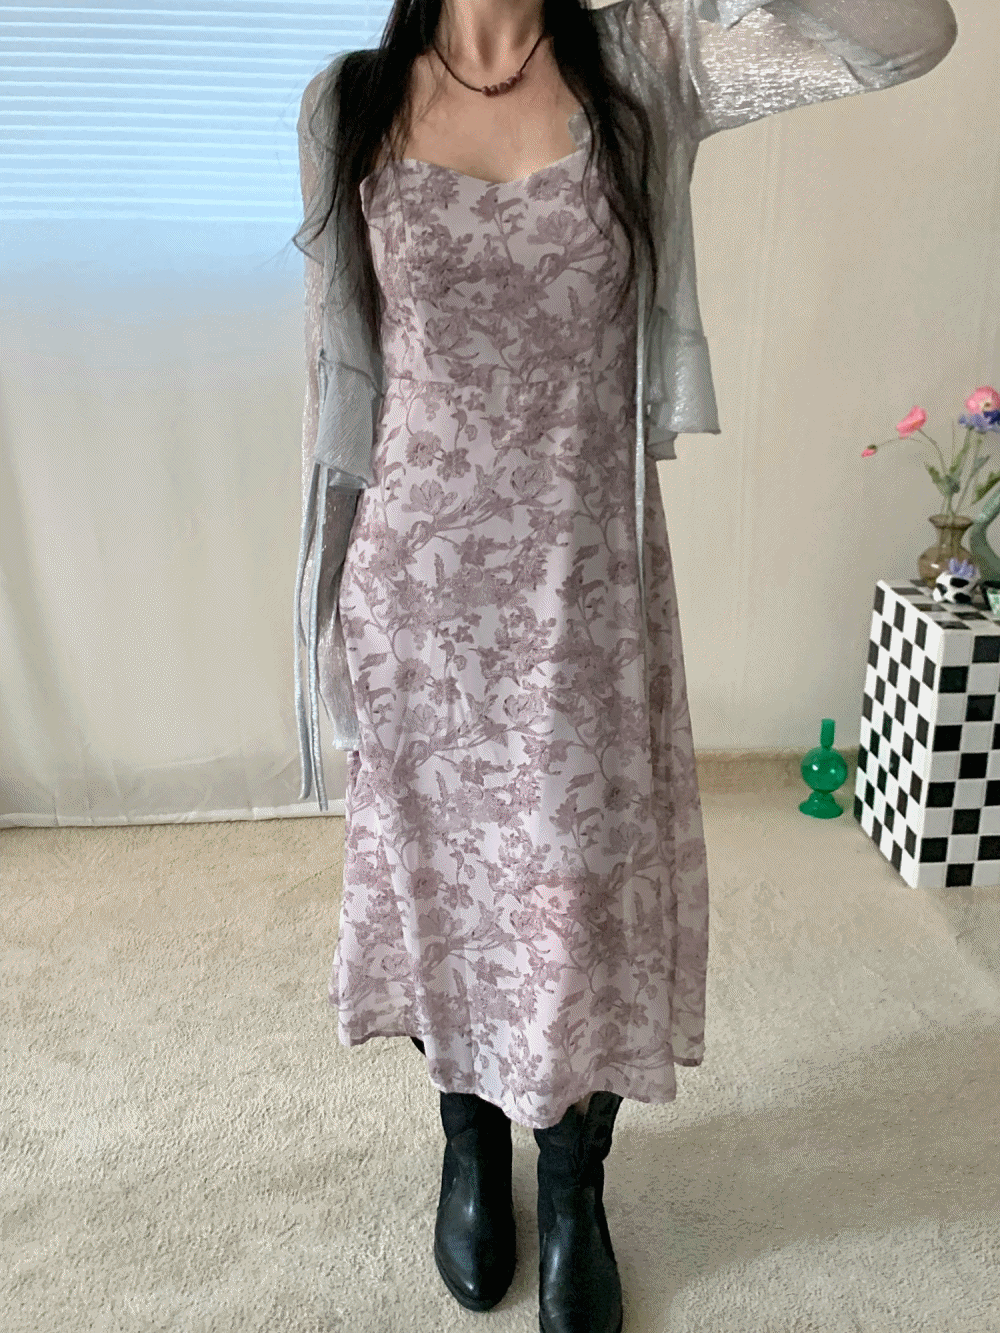 [SAMPLE SALE] [Dress] Elizabeth vintage dress / 2 colors